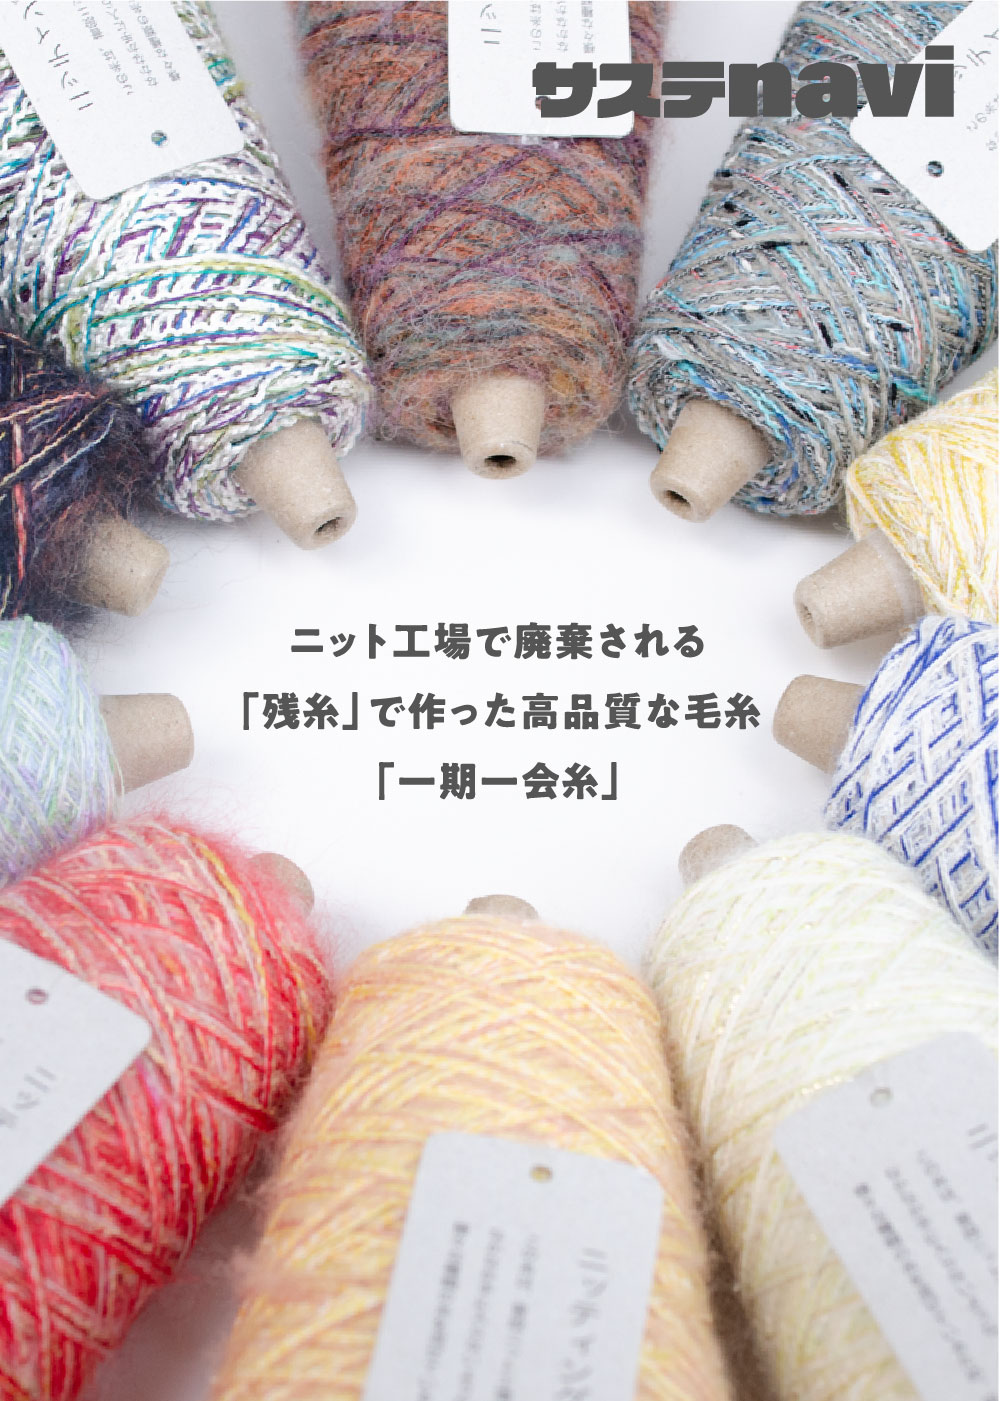 ニット工場で廃棄される「残糸」で作った高品質な毛糸「一期一会糸」